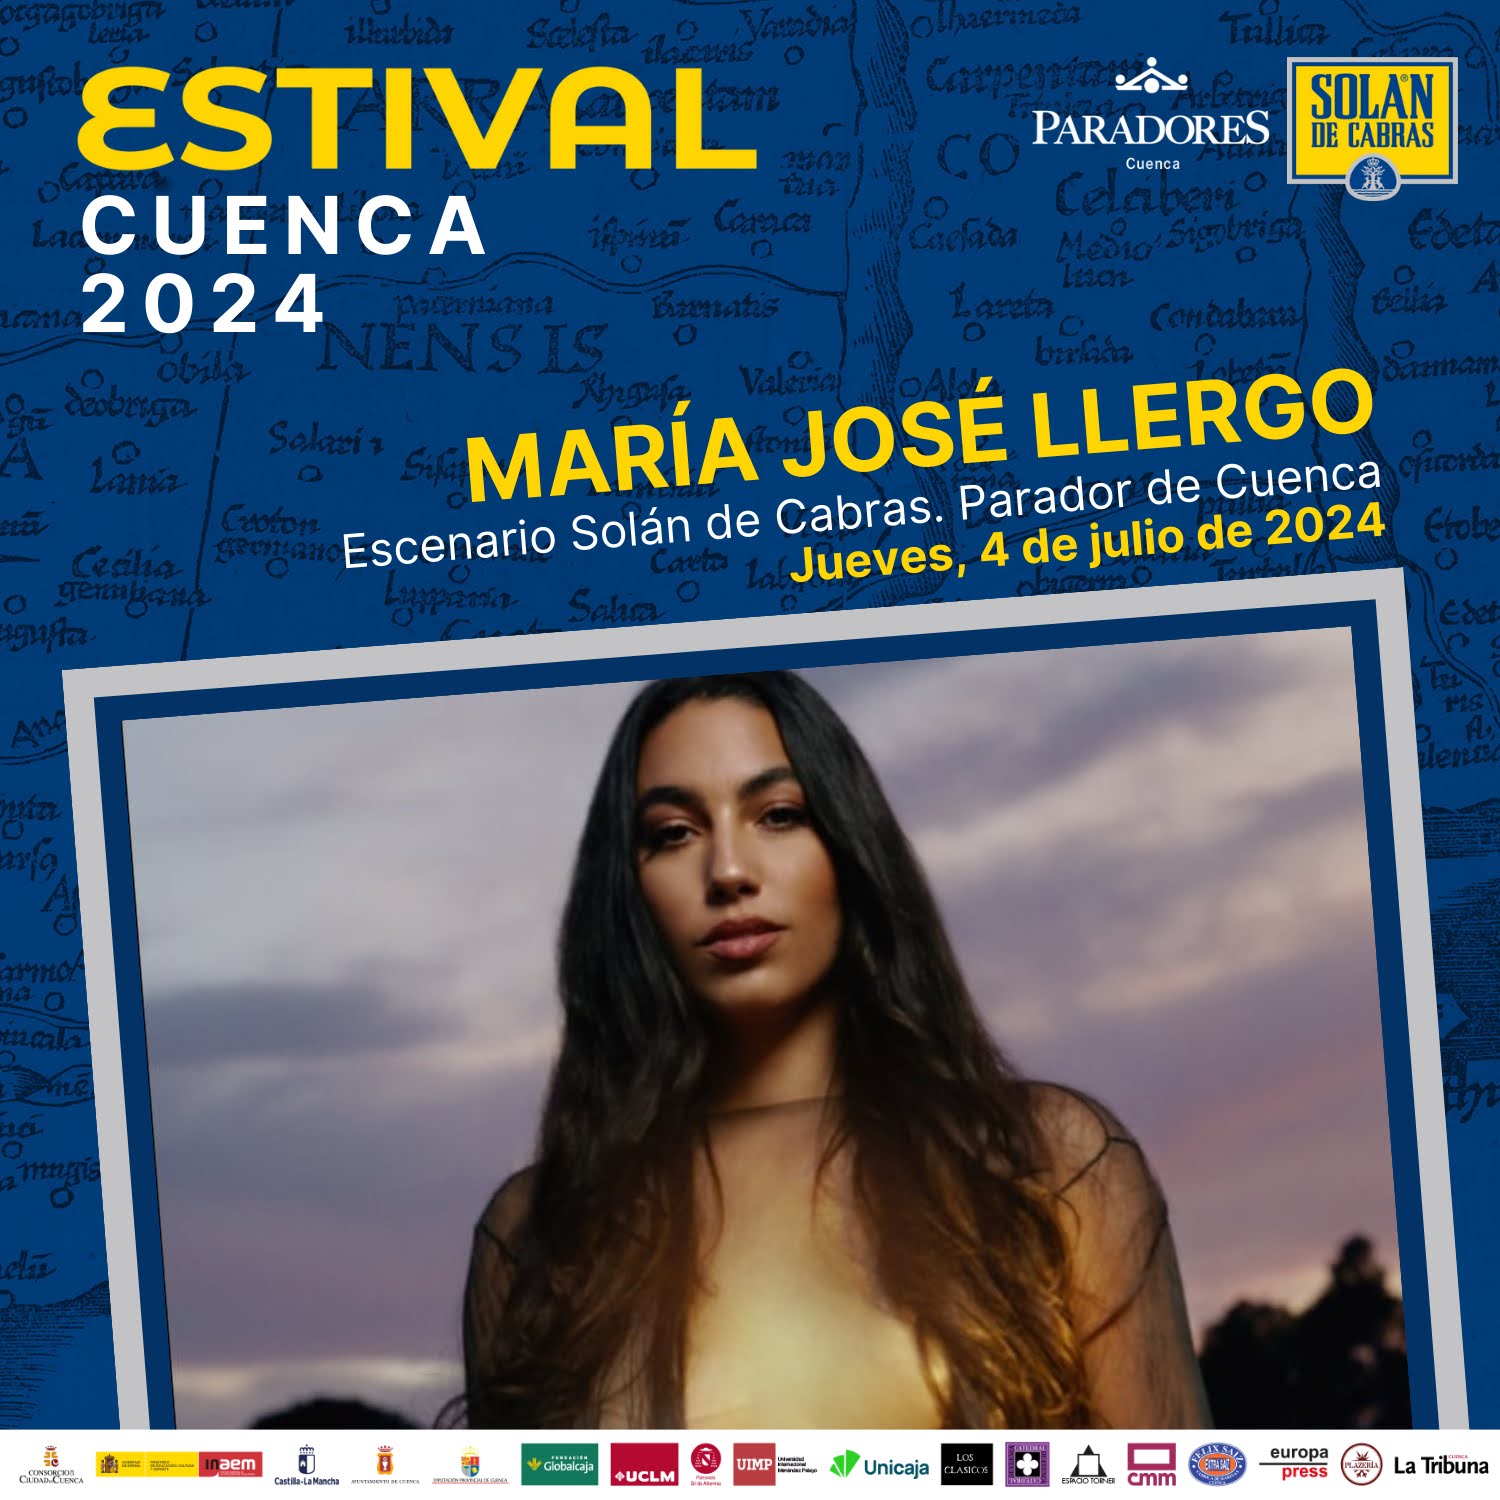 La “ultrabelleza” de María José Llergo estará presente en Estival Cuenca 2024